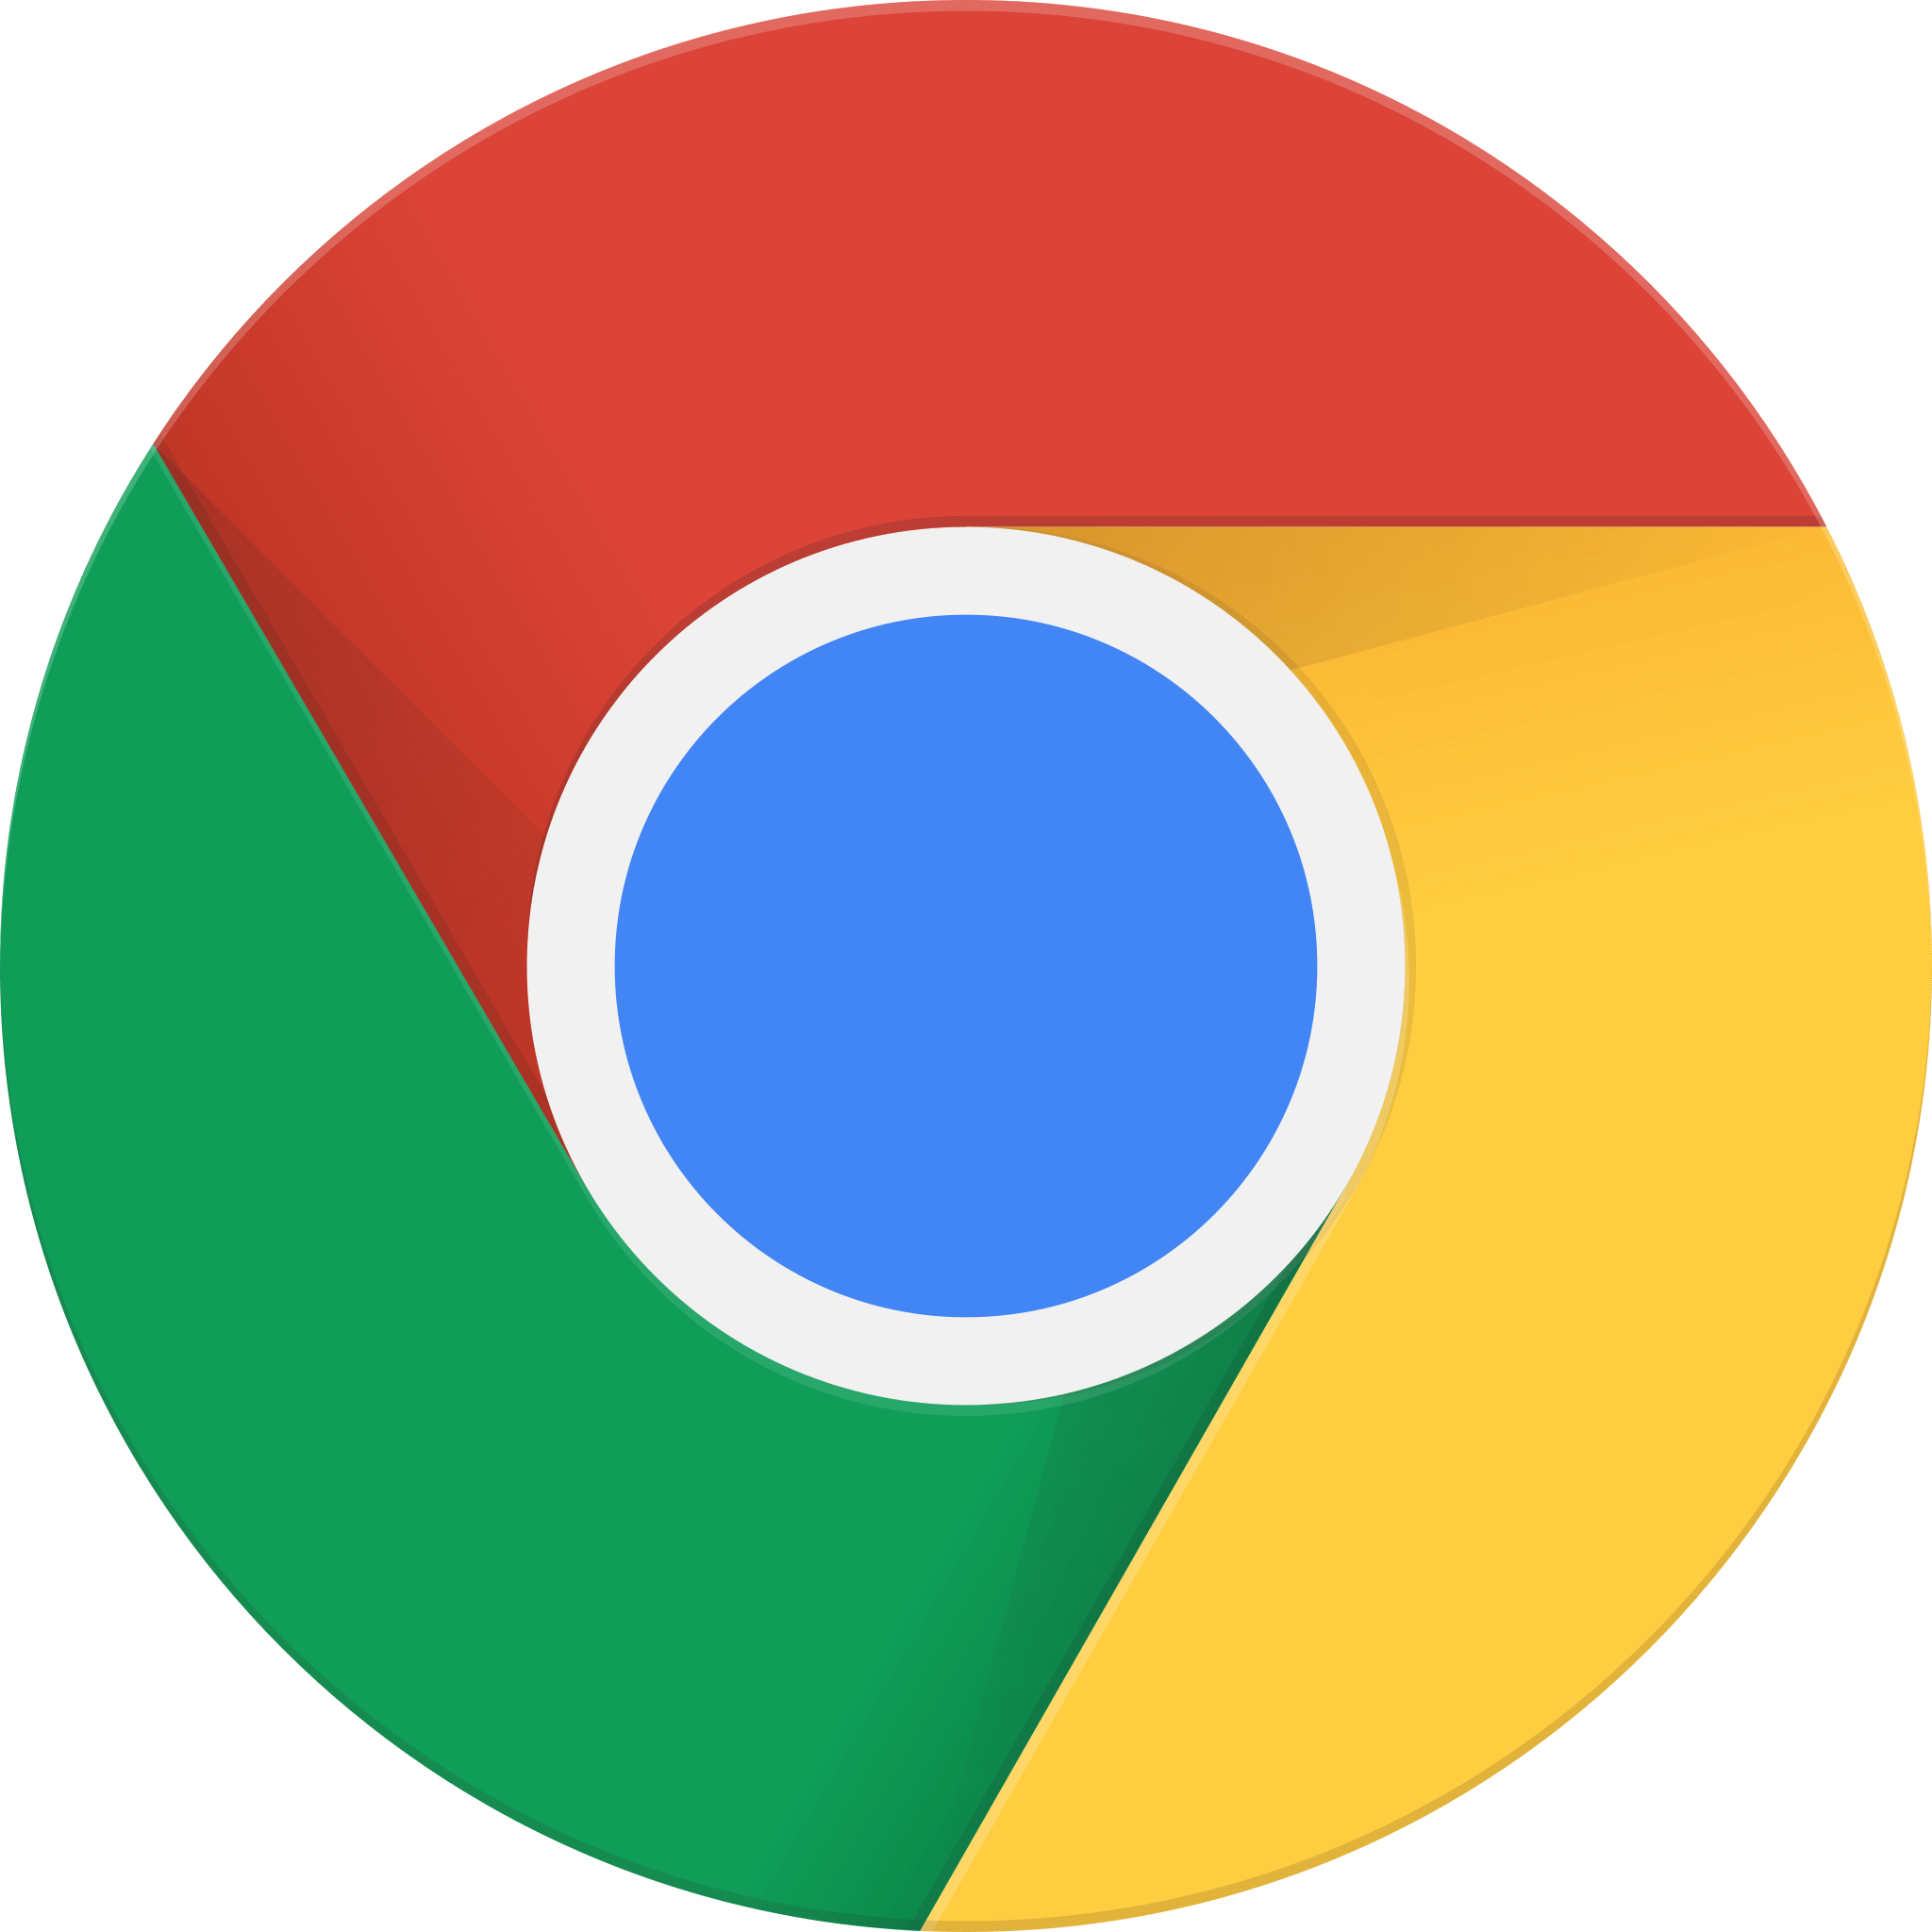 Google Chrome (dernière version stable supportée).